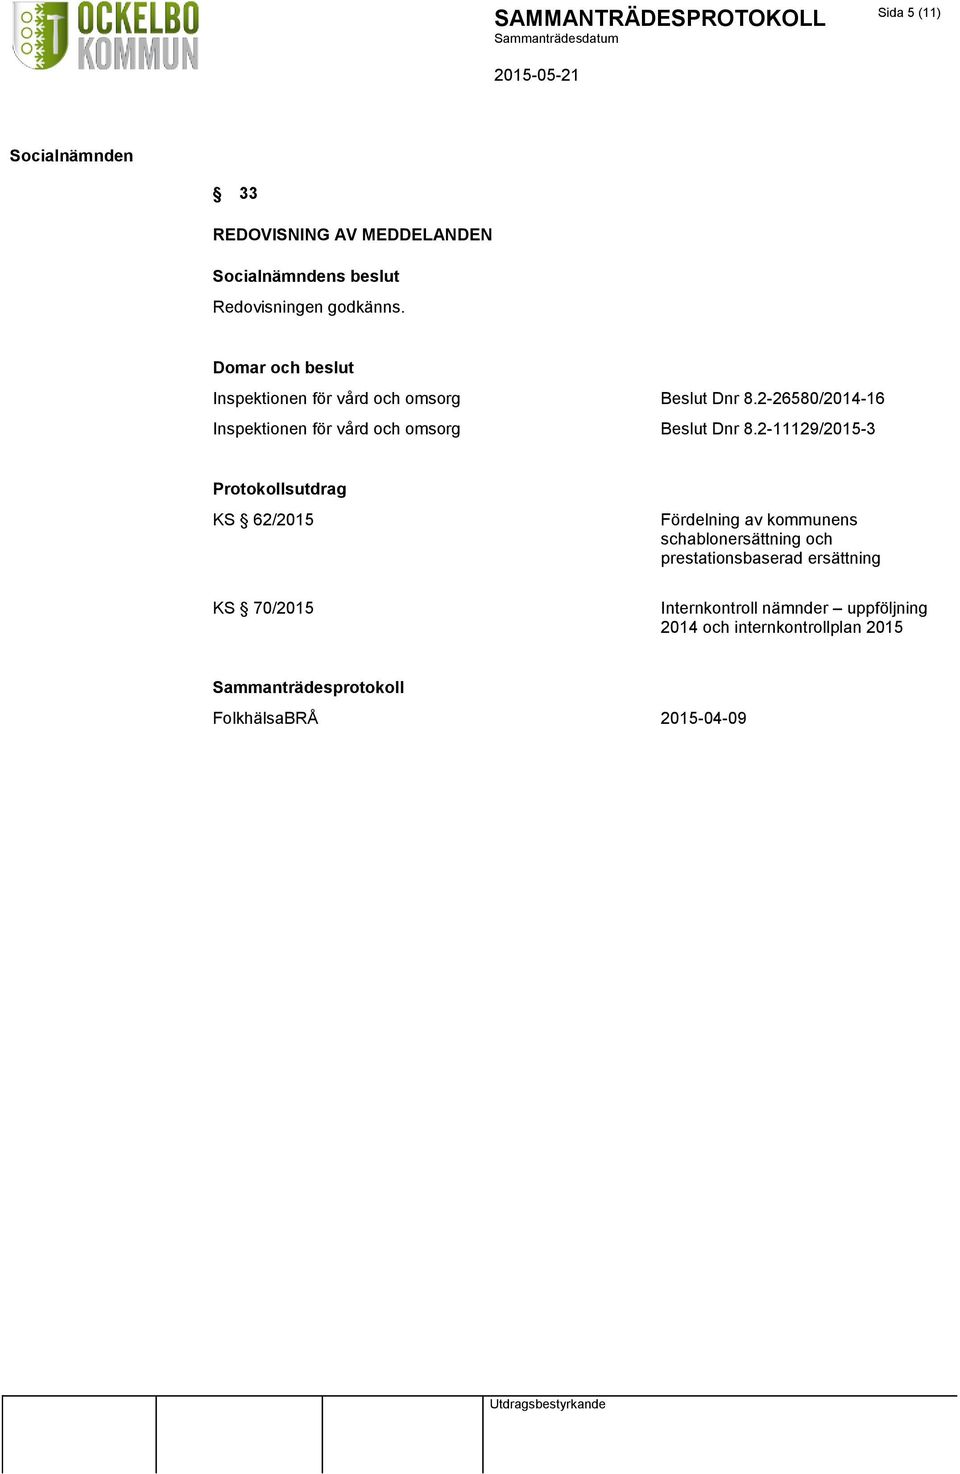 2-26580/2014-16 Inspektionen för vård och omsorg Beslut Dnr 8.